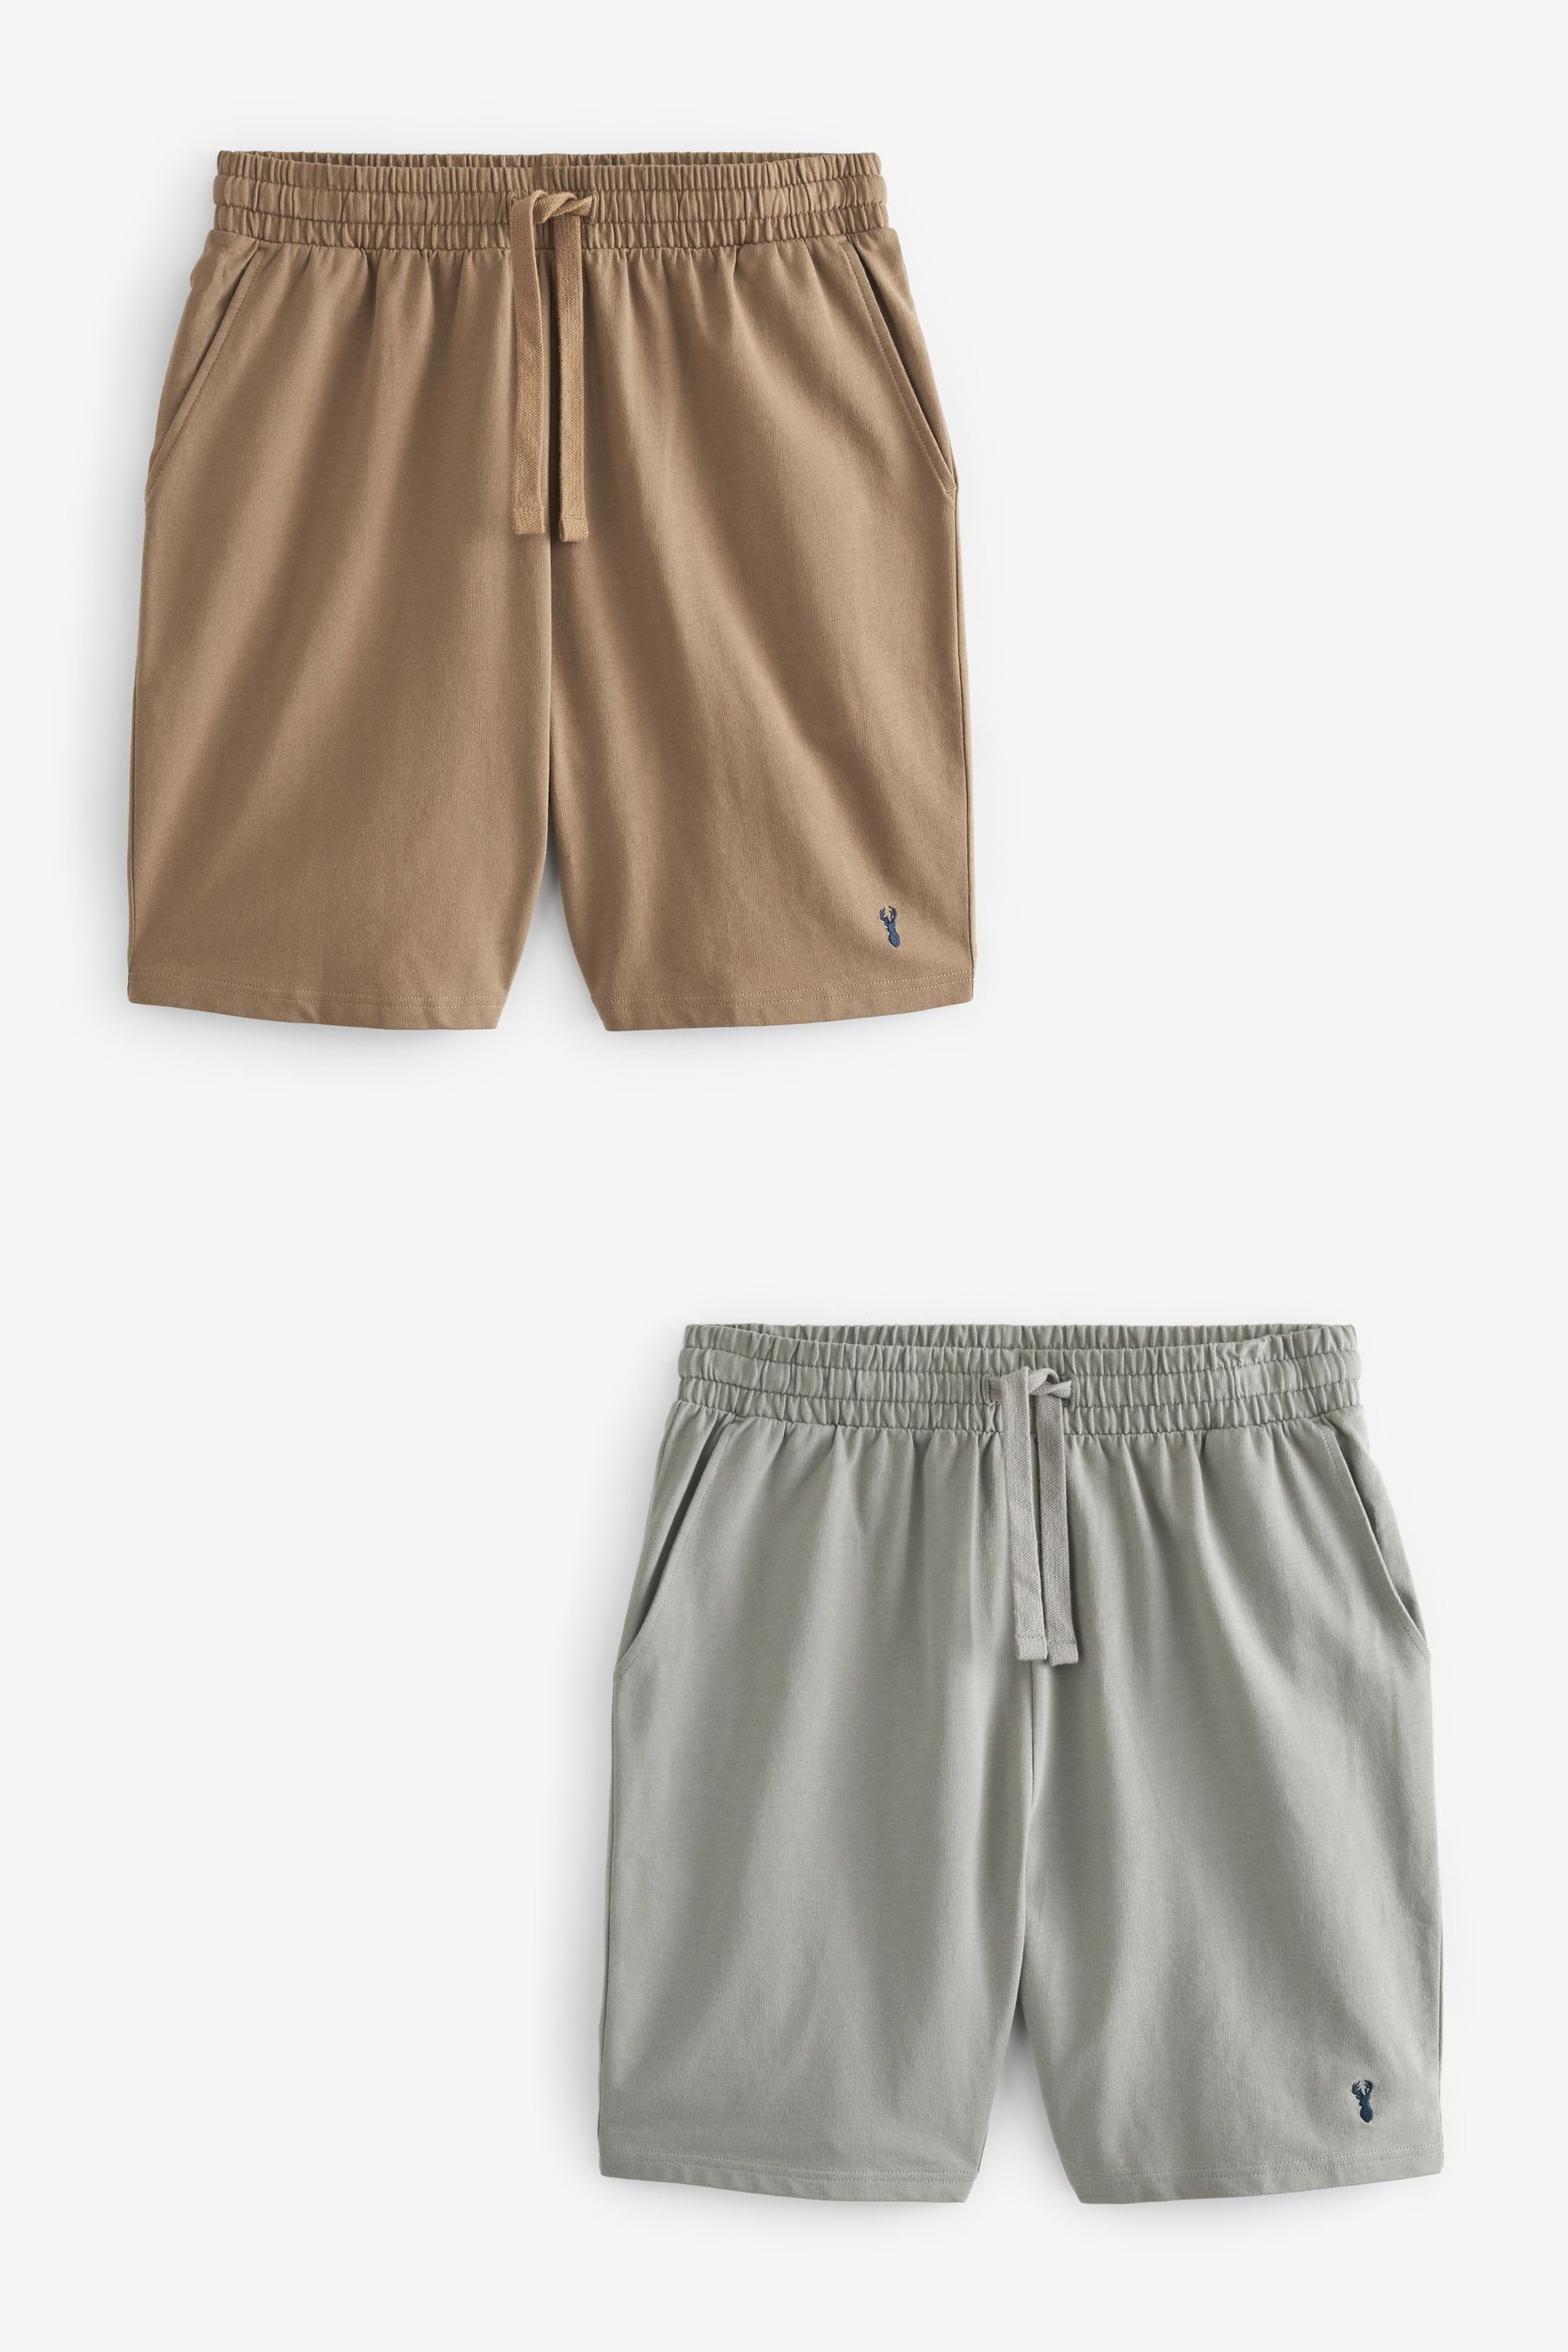 Next Schlafshorts Leichte Shorts, 2er-Pack (2-tlg) Grey/Tan